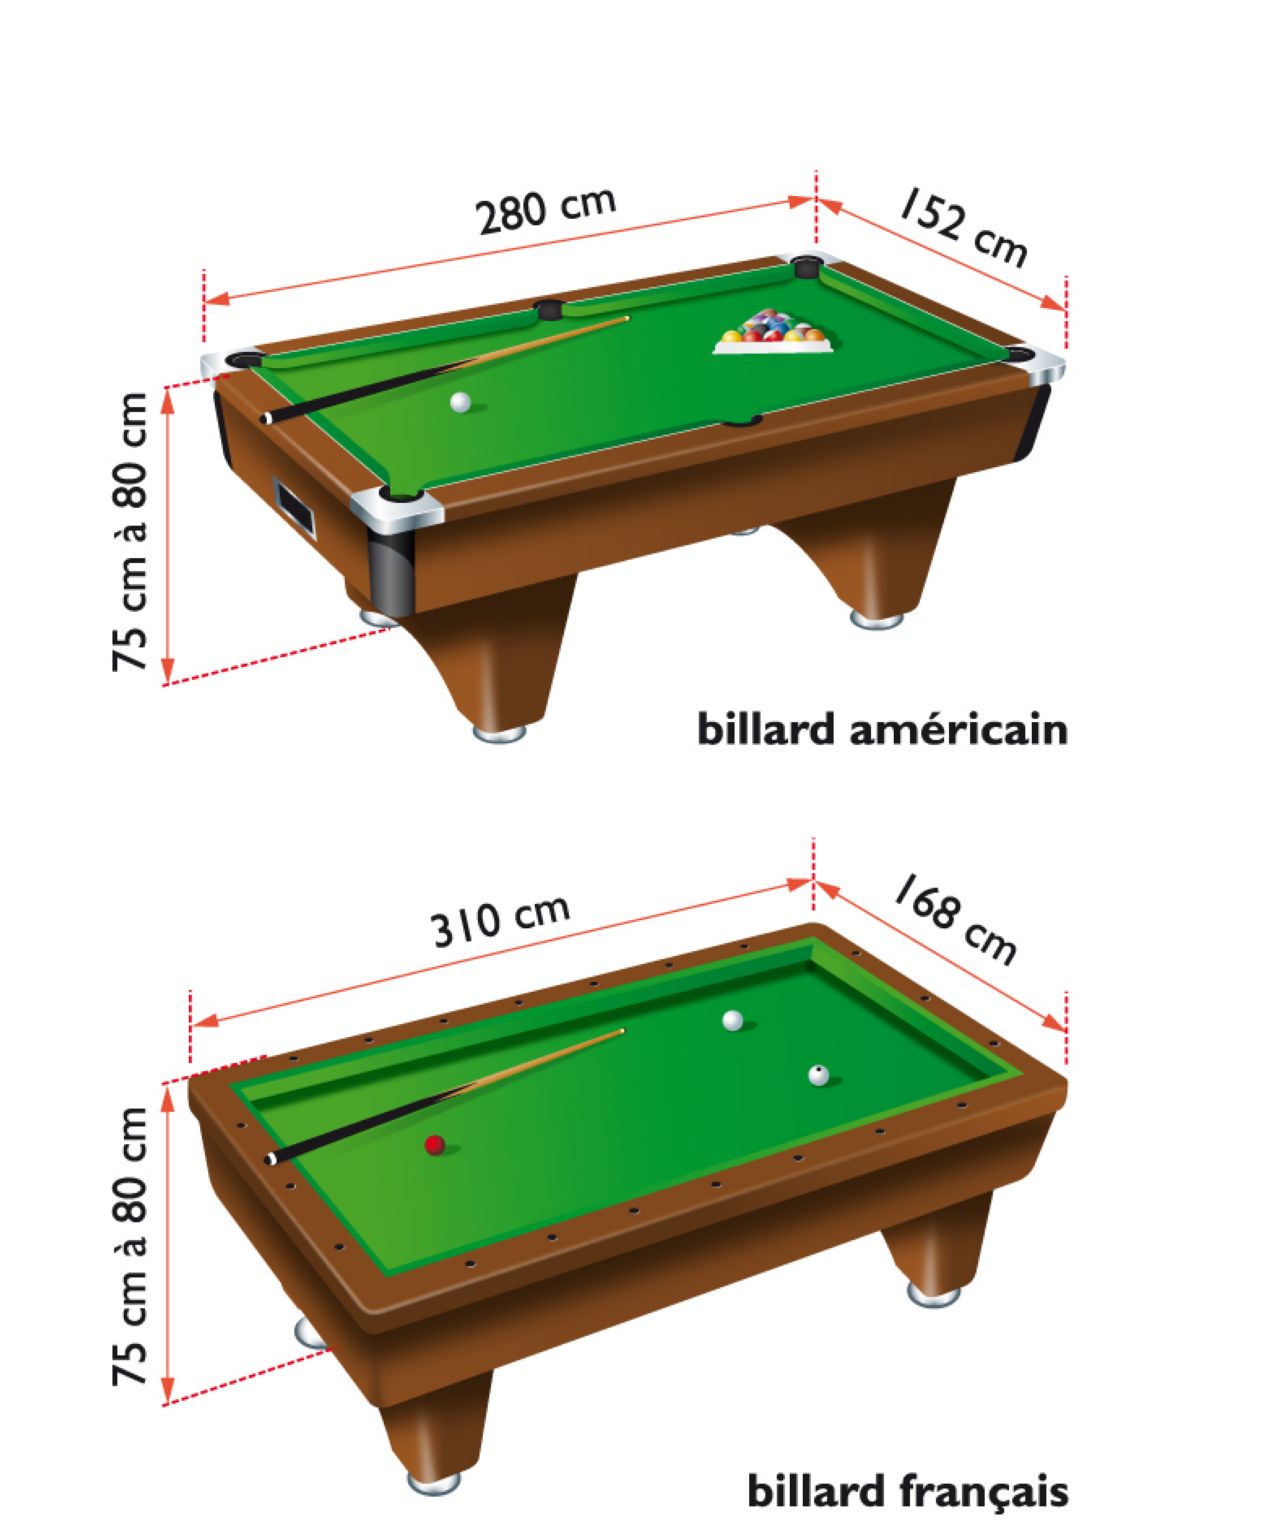 les dimensions des tables de billard (américain et français)